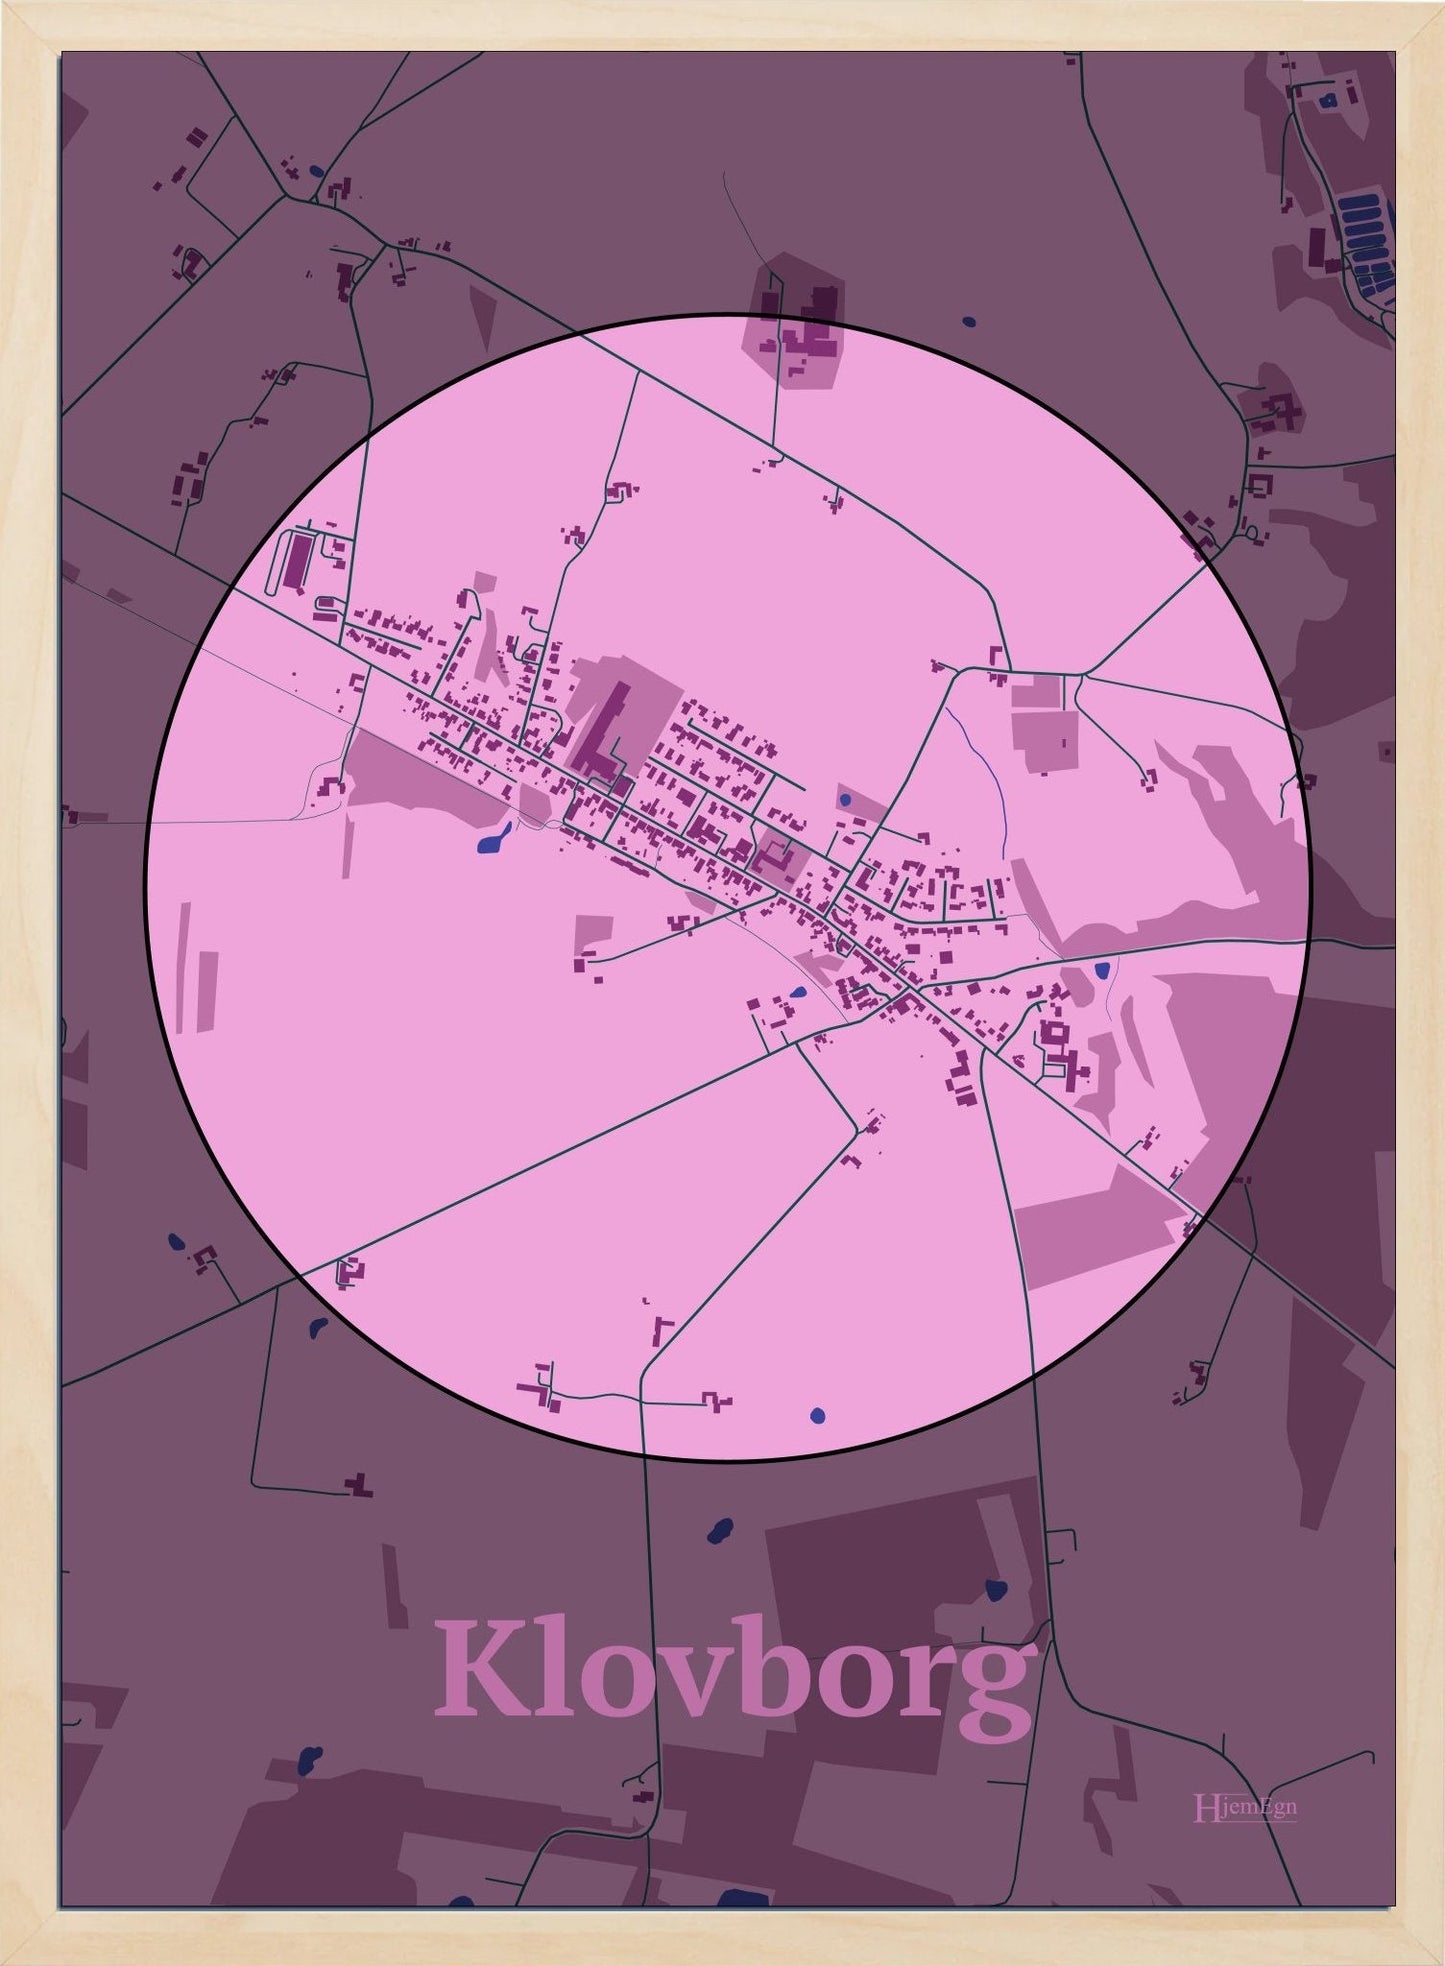 Klovborg plakat i farve pastel rød og HjemEgn.dk design centrum. Design bykort for Klovborg